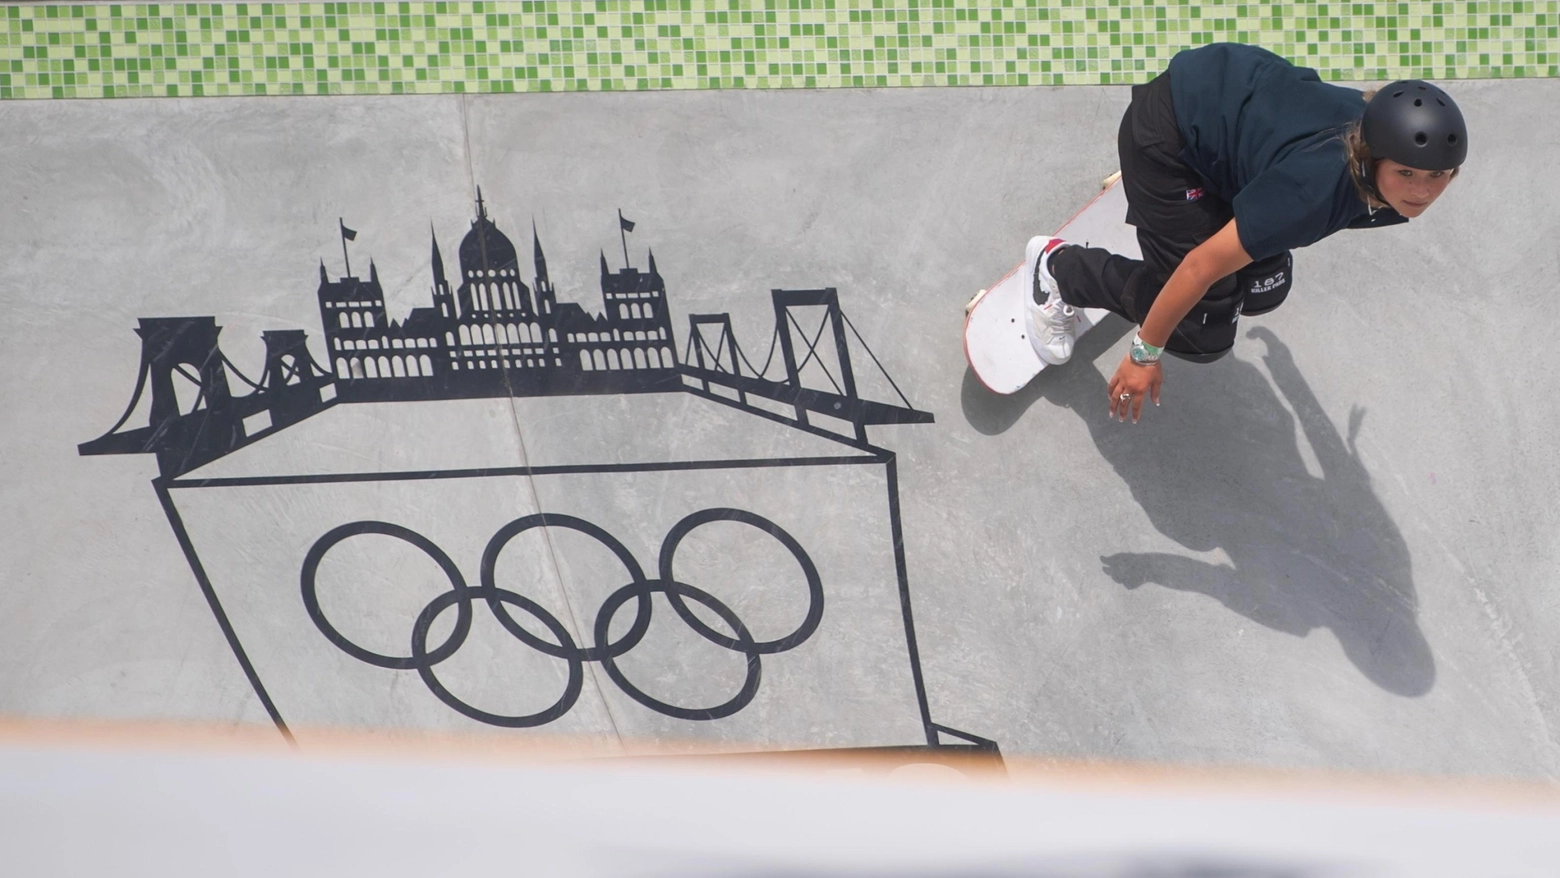 Dopo Tokyo, lo skateboard ritorna alle Olimpiadi di Parigi 2024 con competizioni spettacolari nelle discipline di street e park, promettendo emozioni e sorprese per tutti gli appassionati